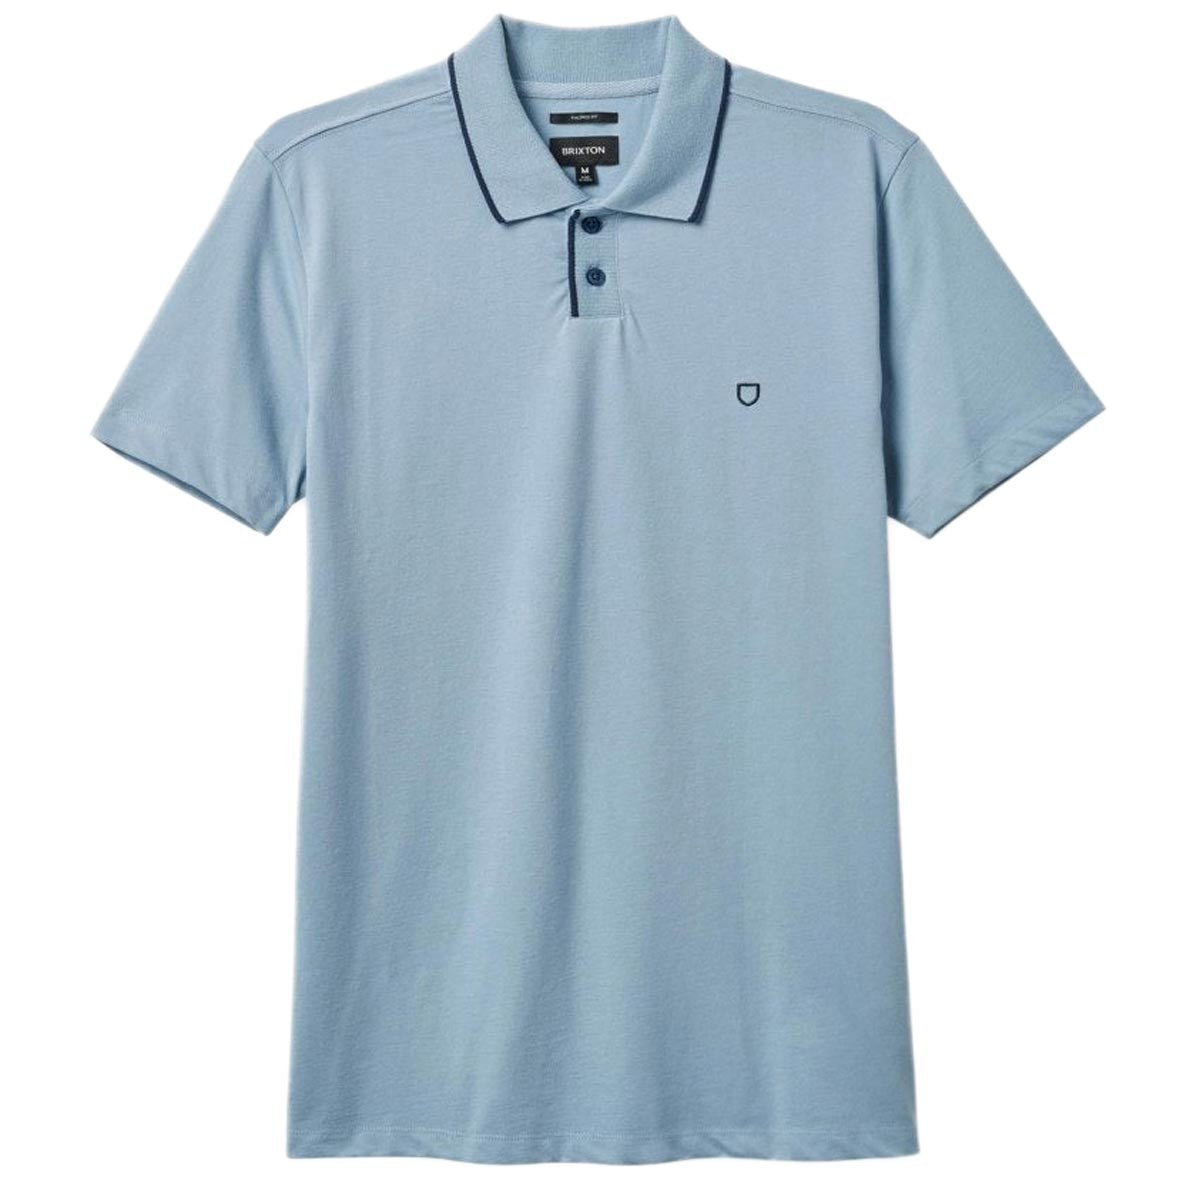 Brixton Mod Flex Polo Shirt - Dusty Blue/Washed Navy image 3